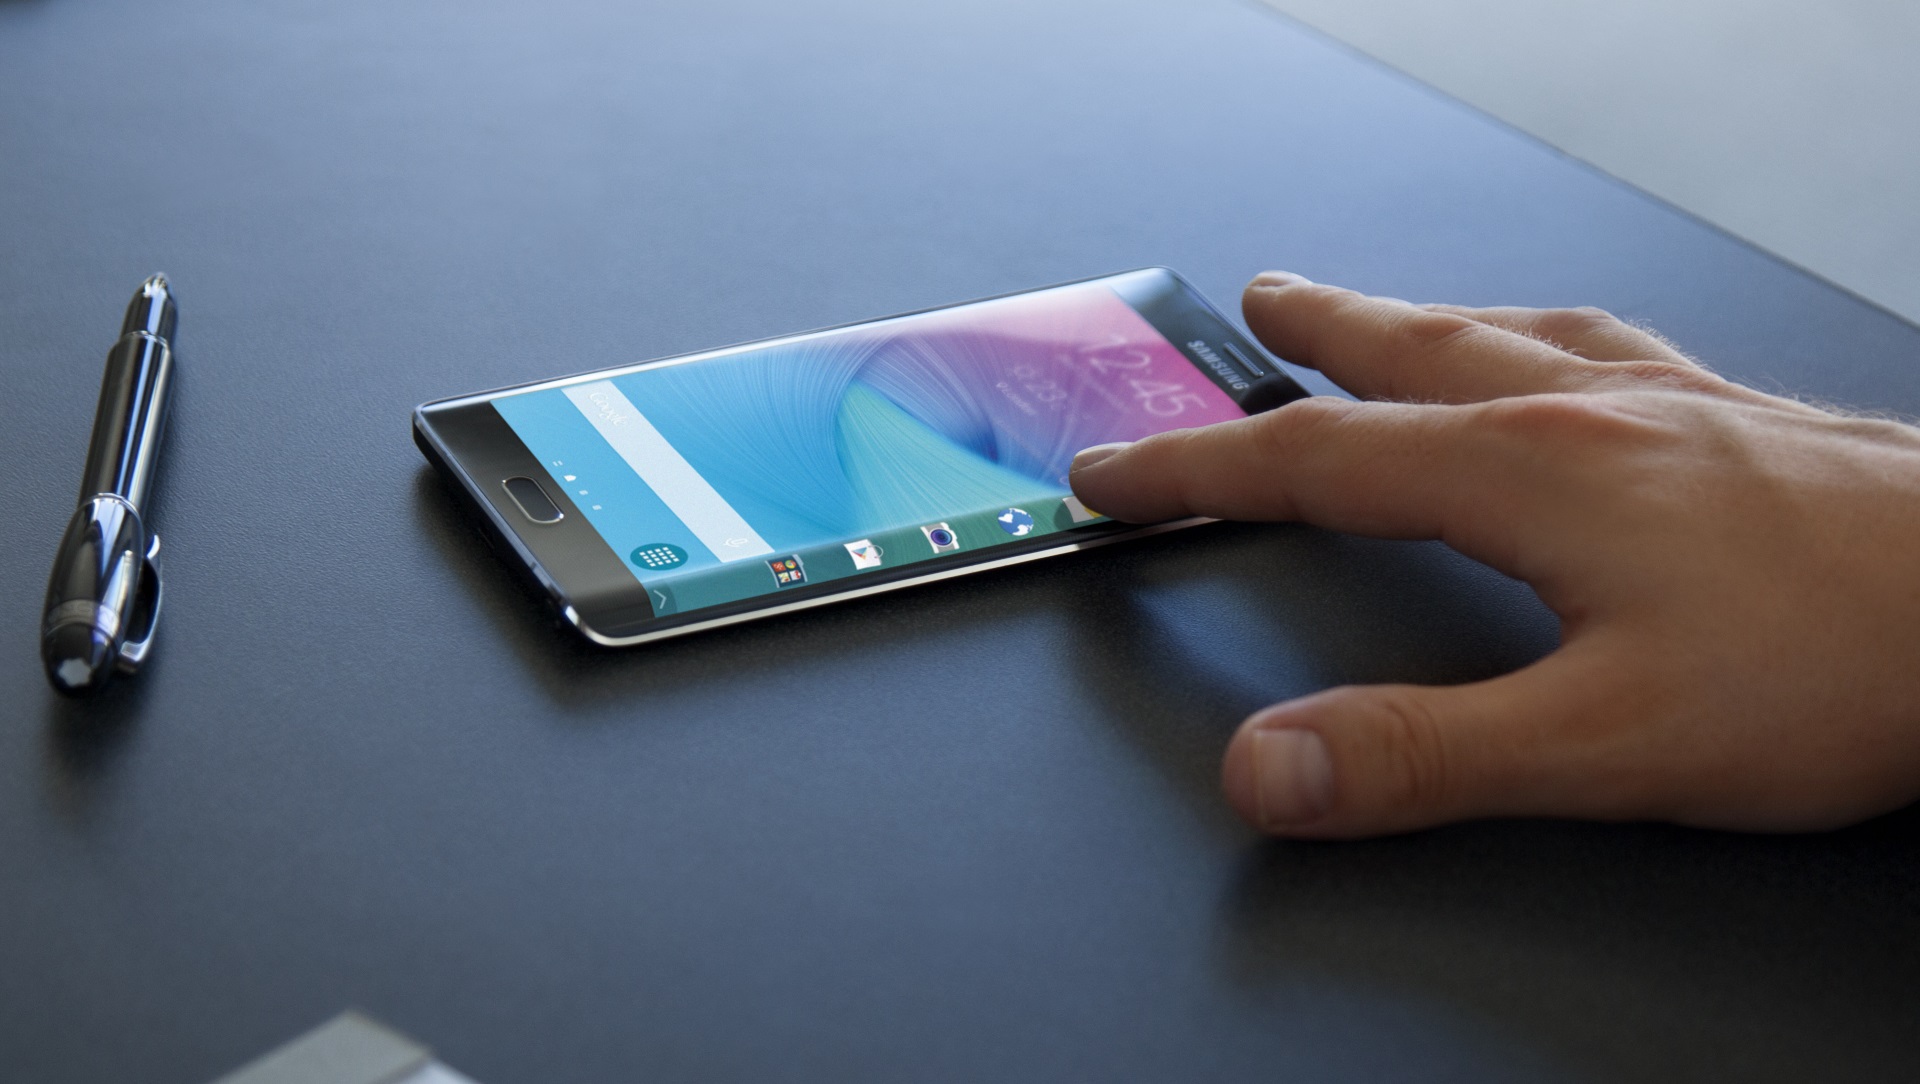 Samsung lanzará pantallas flexibles para teléfonos inteligentes en 2015